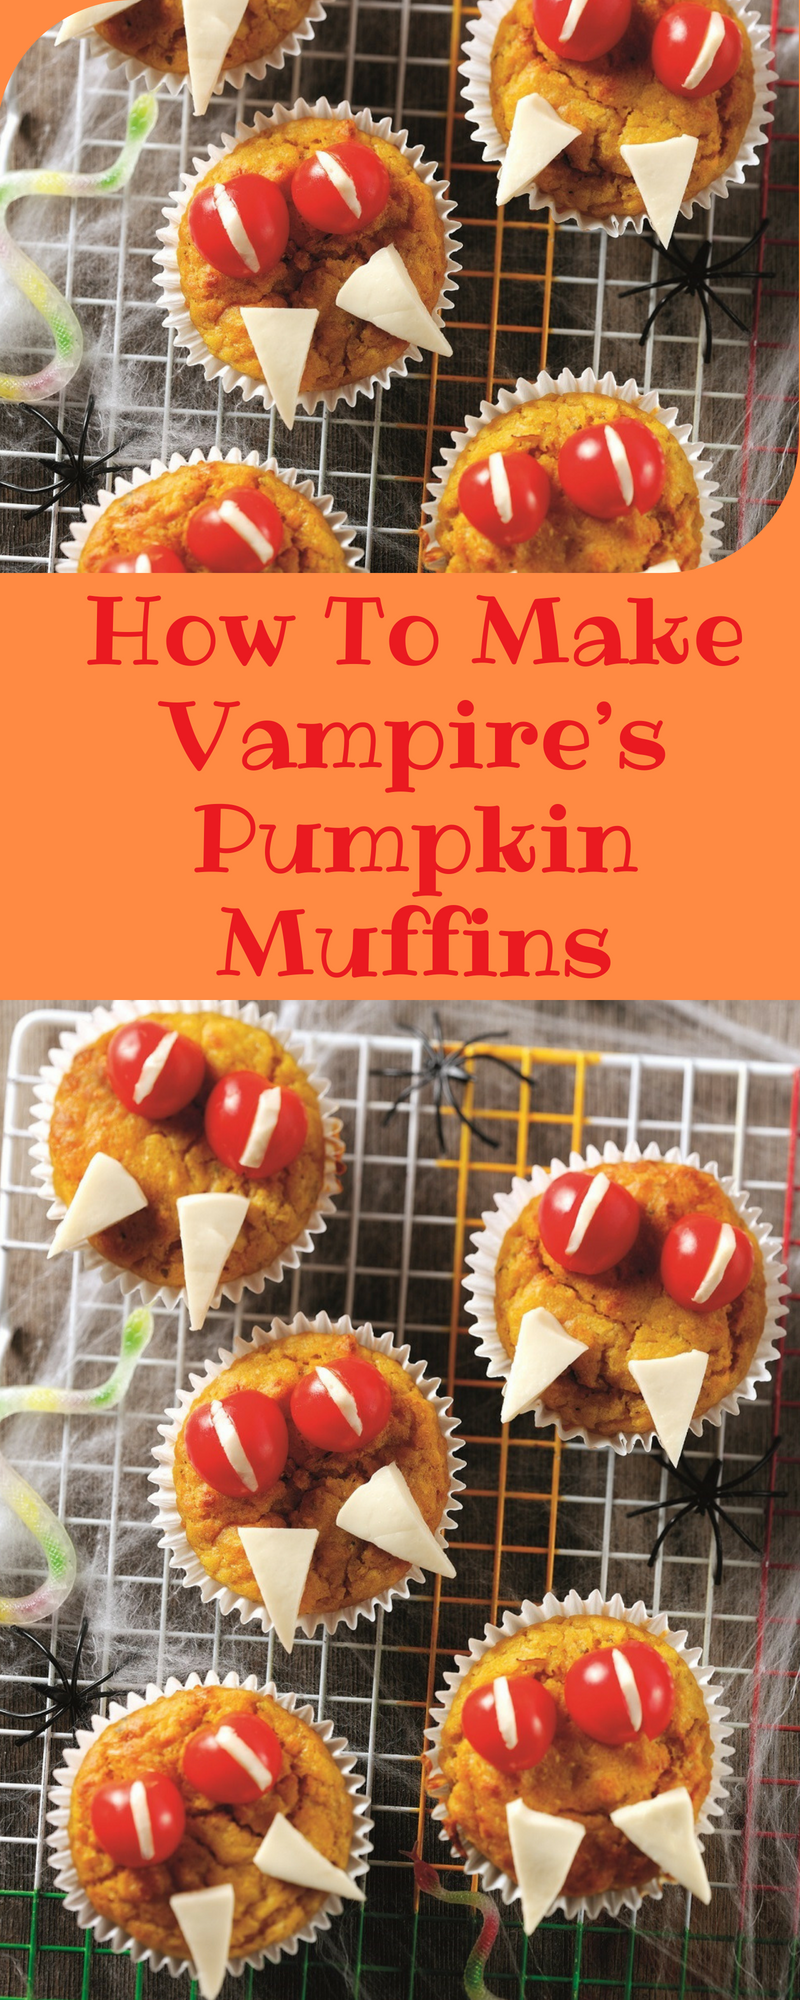 How To Make Vampire's Pumpkin Muffins